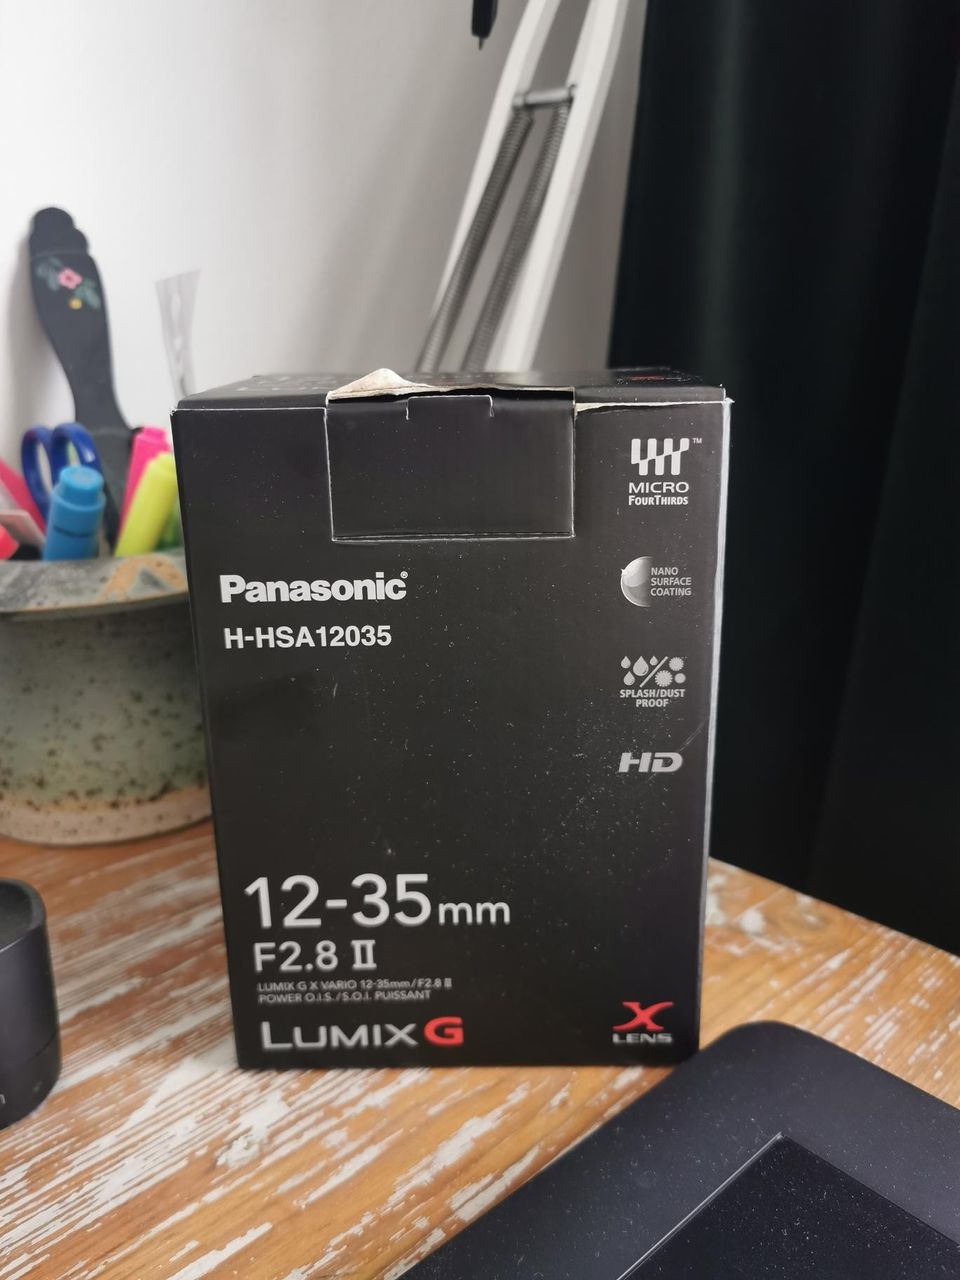 Panasonic lumix g 12-35mm f2.8 II